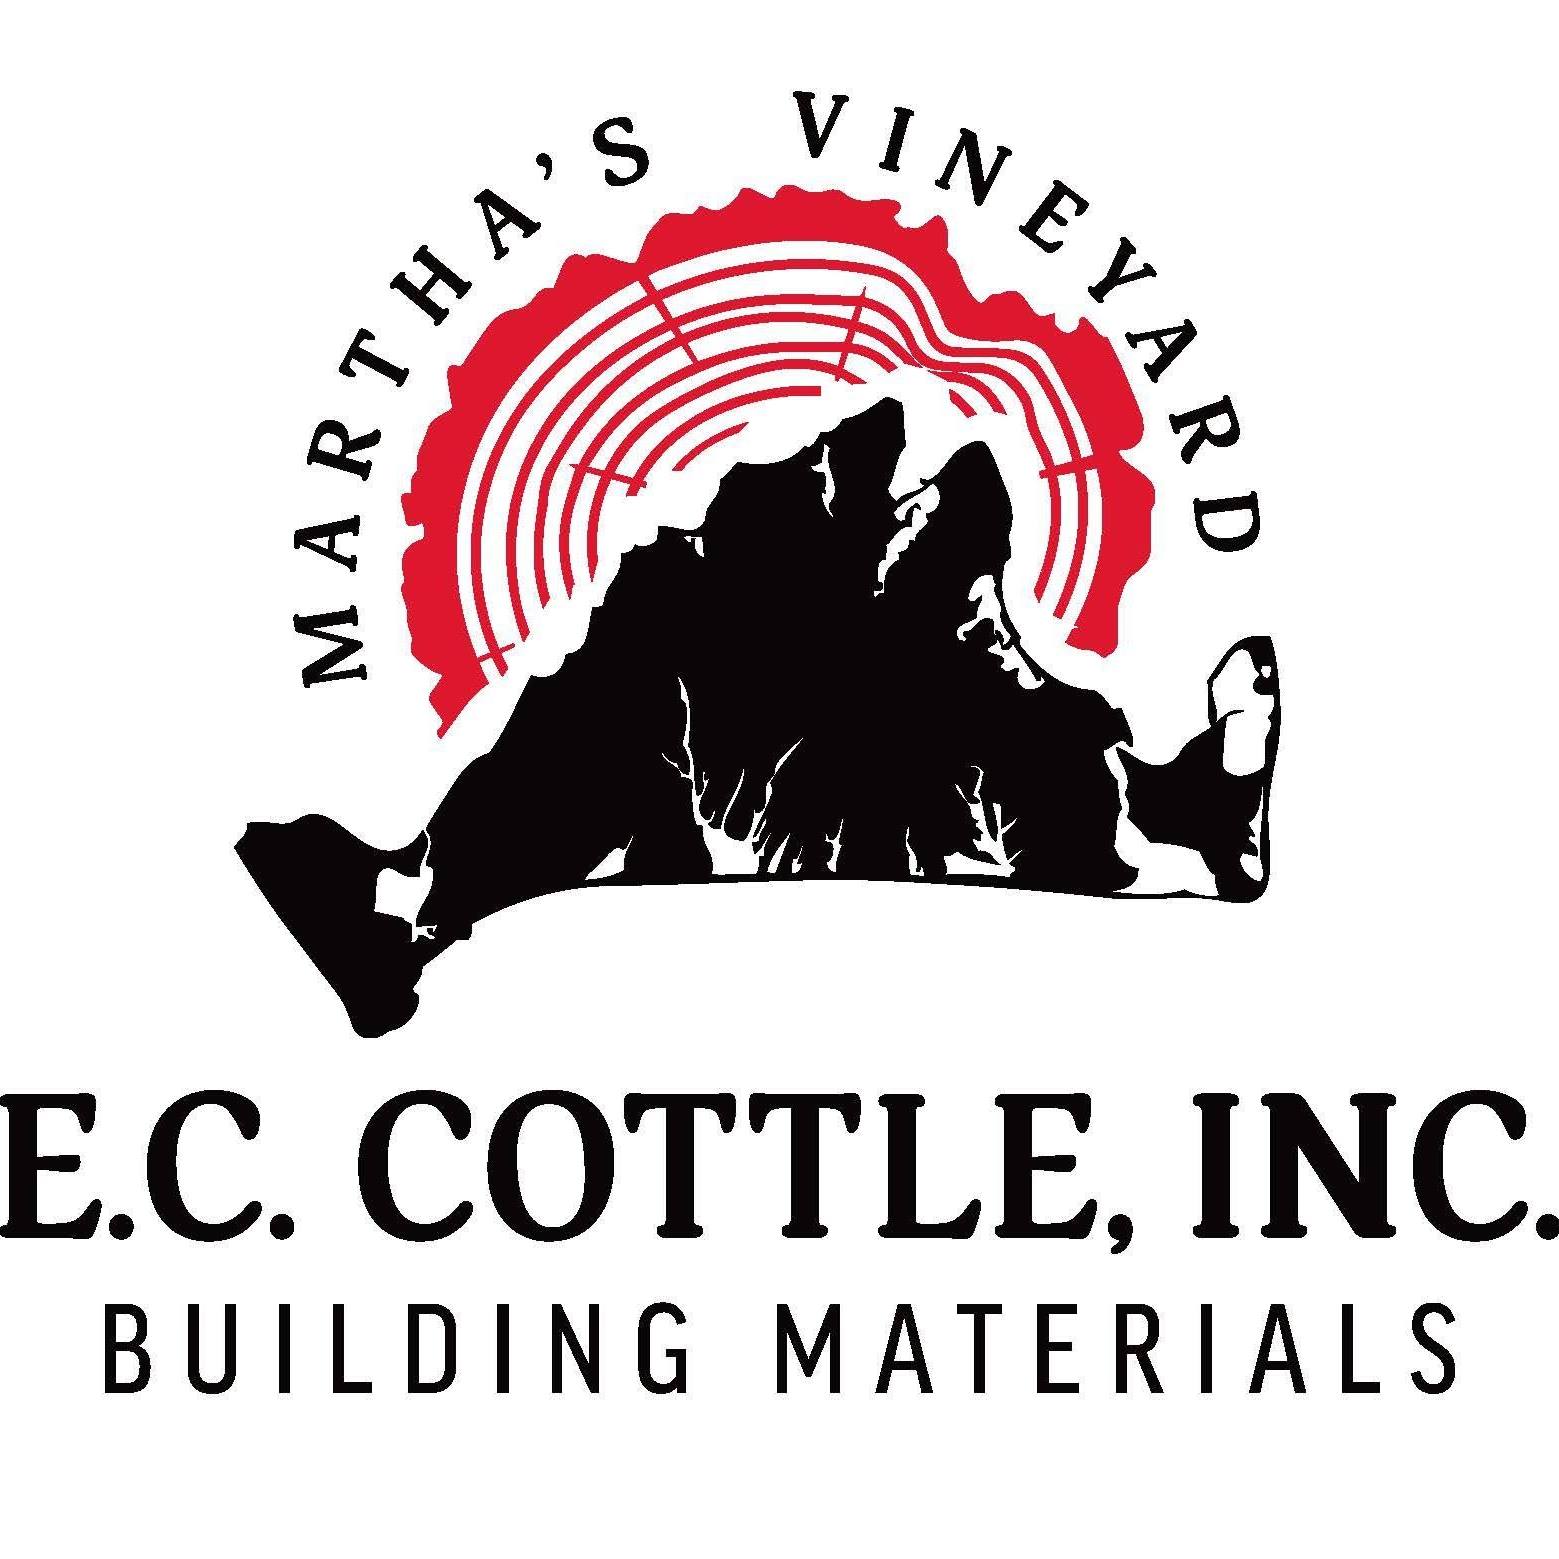 E. C. Cottle, Inc